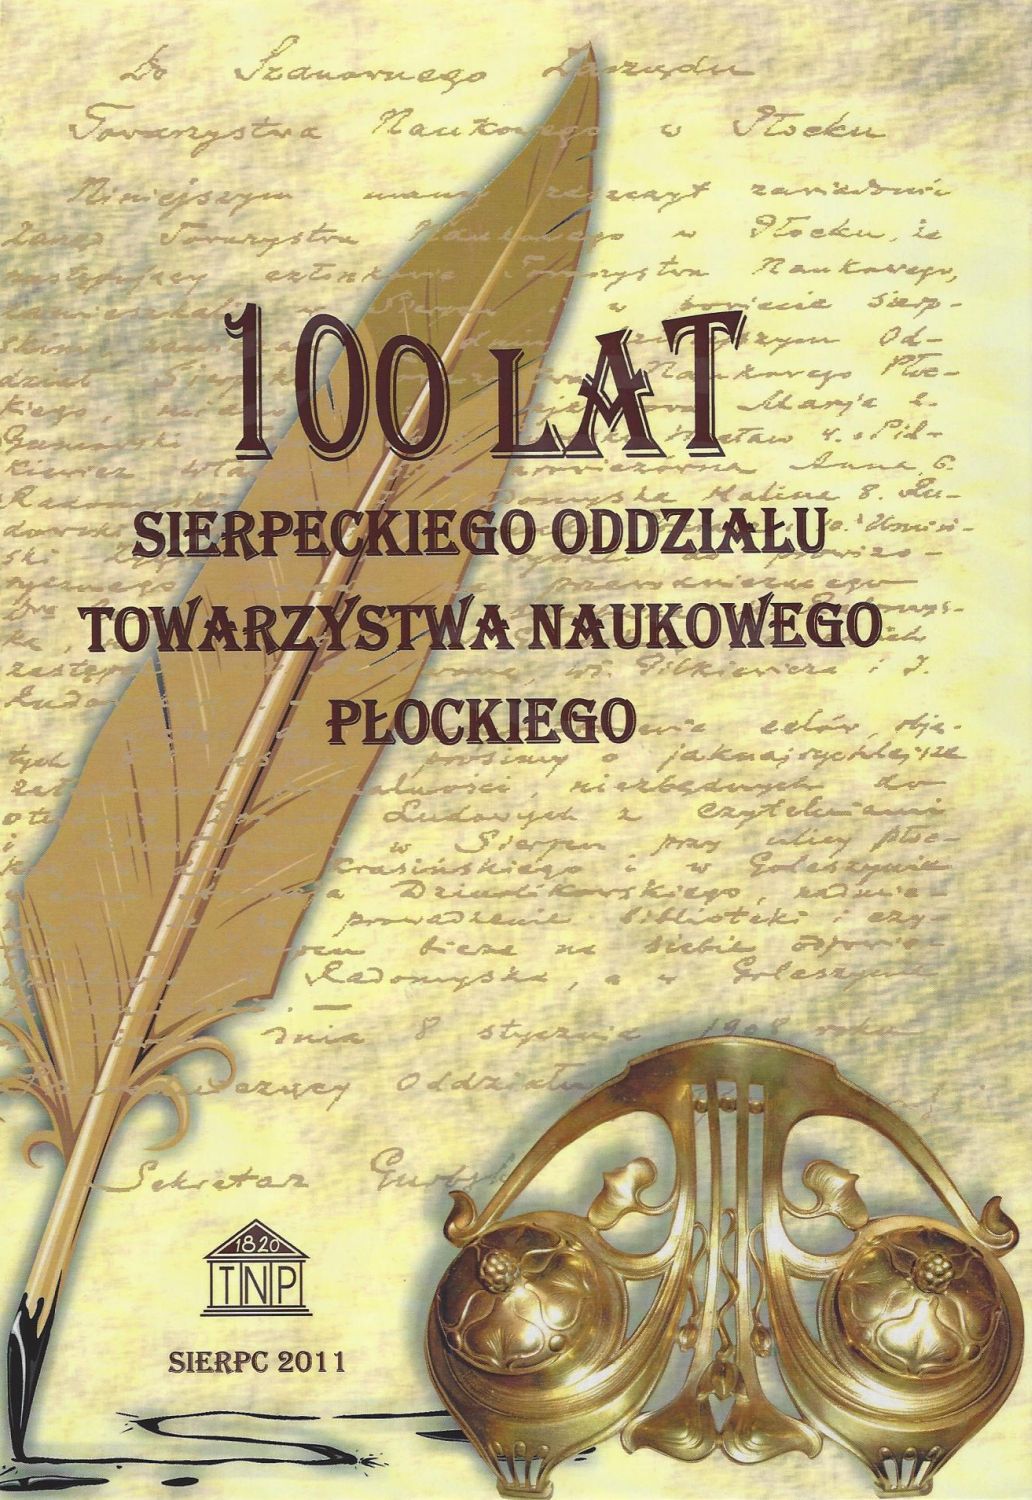 100 lat Sierpeckiego Oddziau Towarzystwa Naukowego Pockiego, praca zbiorowa pod redakcj Henryki Piekarskiej, Sierpc 2011